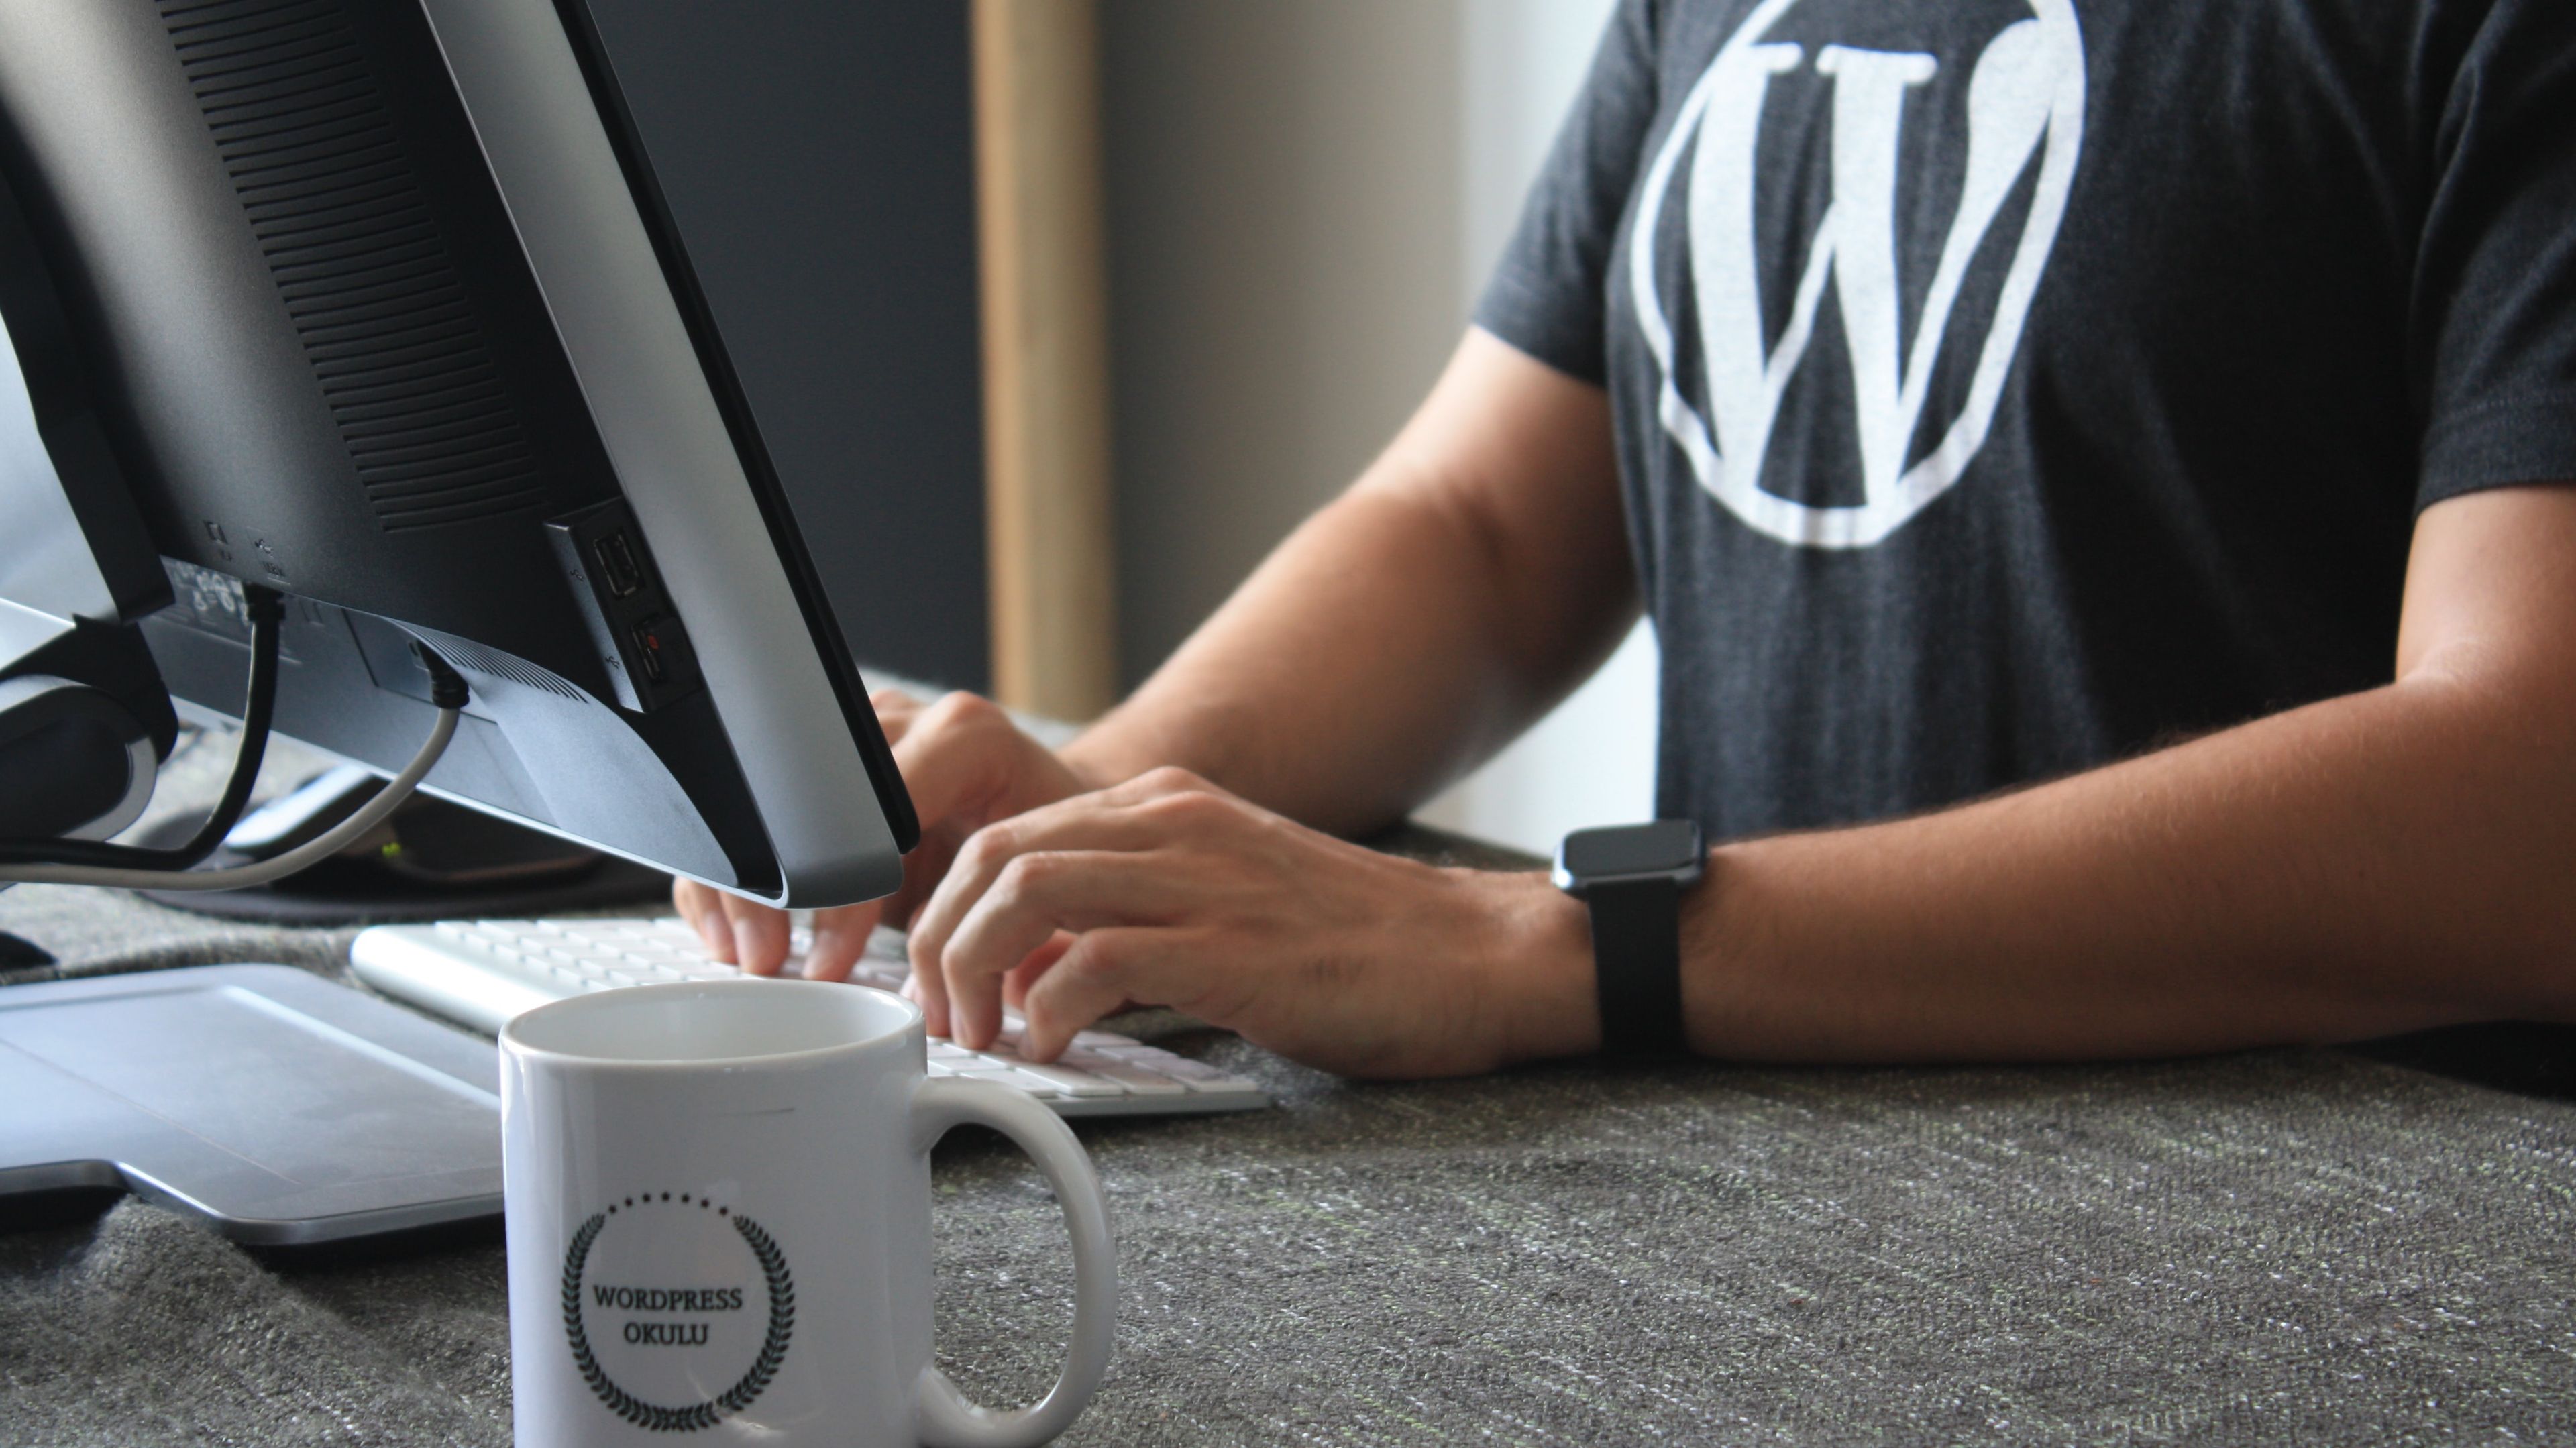 Persona escribiendo en un ordenador con una camiseta con el logo de WordPress y una taza en primer plano